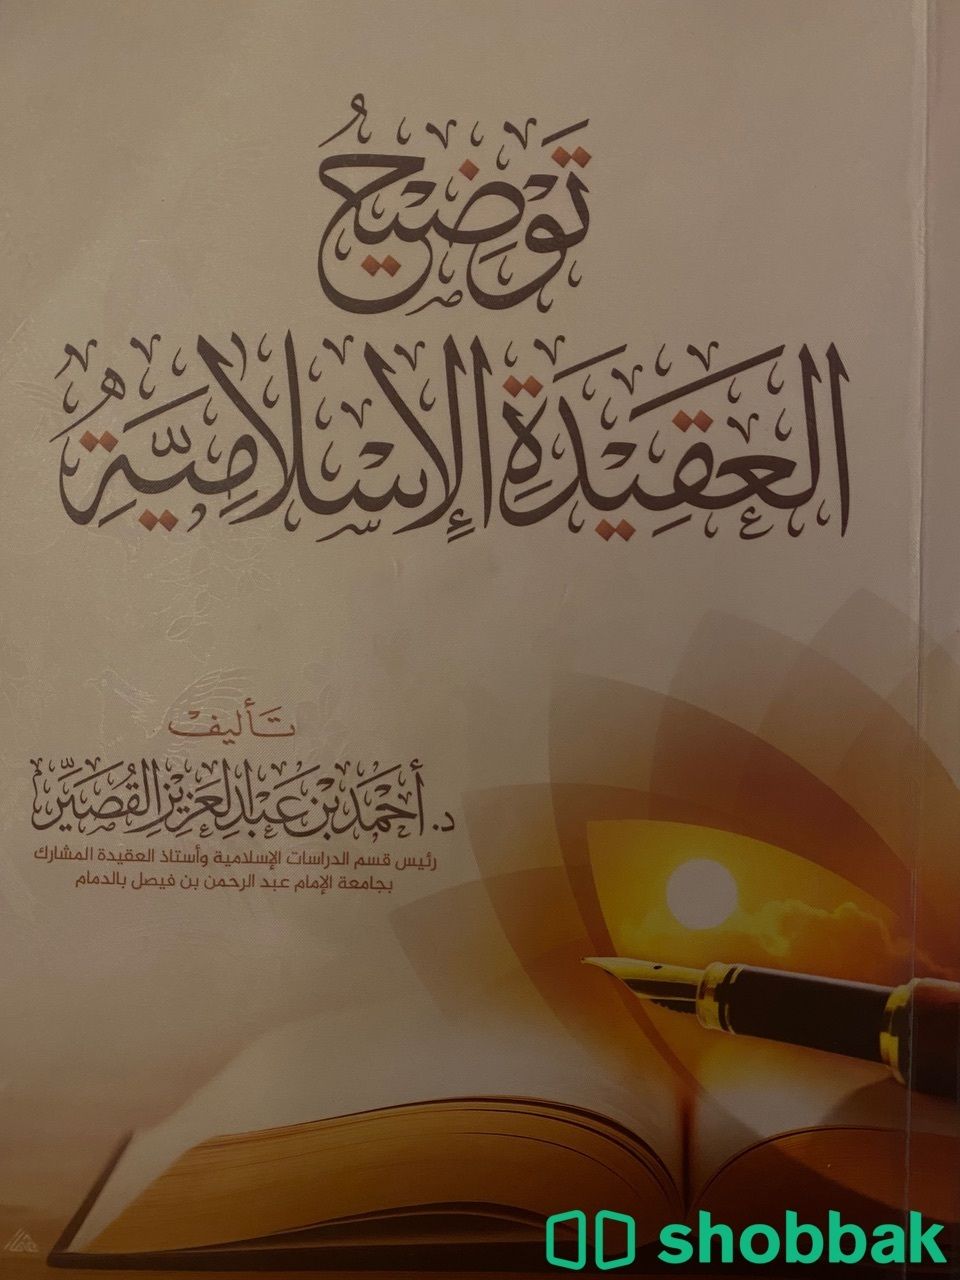 كتاب مستخدم  Shobbak Saudi Arabia